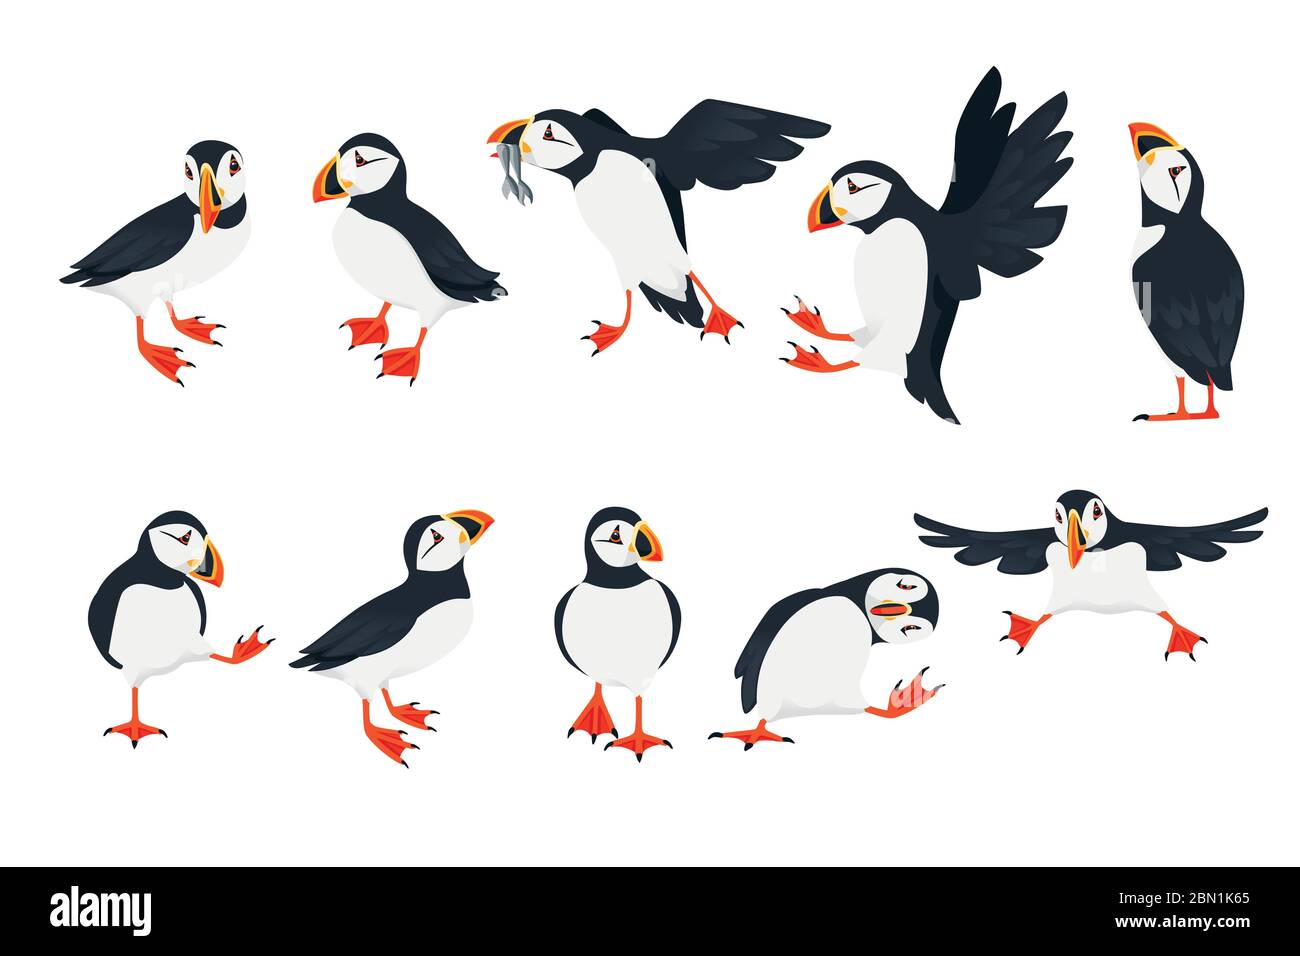 Ensemble de l'oiseau de macareux de l'atlantique dans différentes poses dessin animé animal dessin illustration vectorielle plate isolée sur fond blanc Illustration de Vecteur